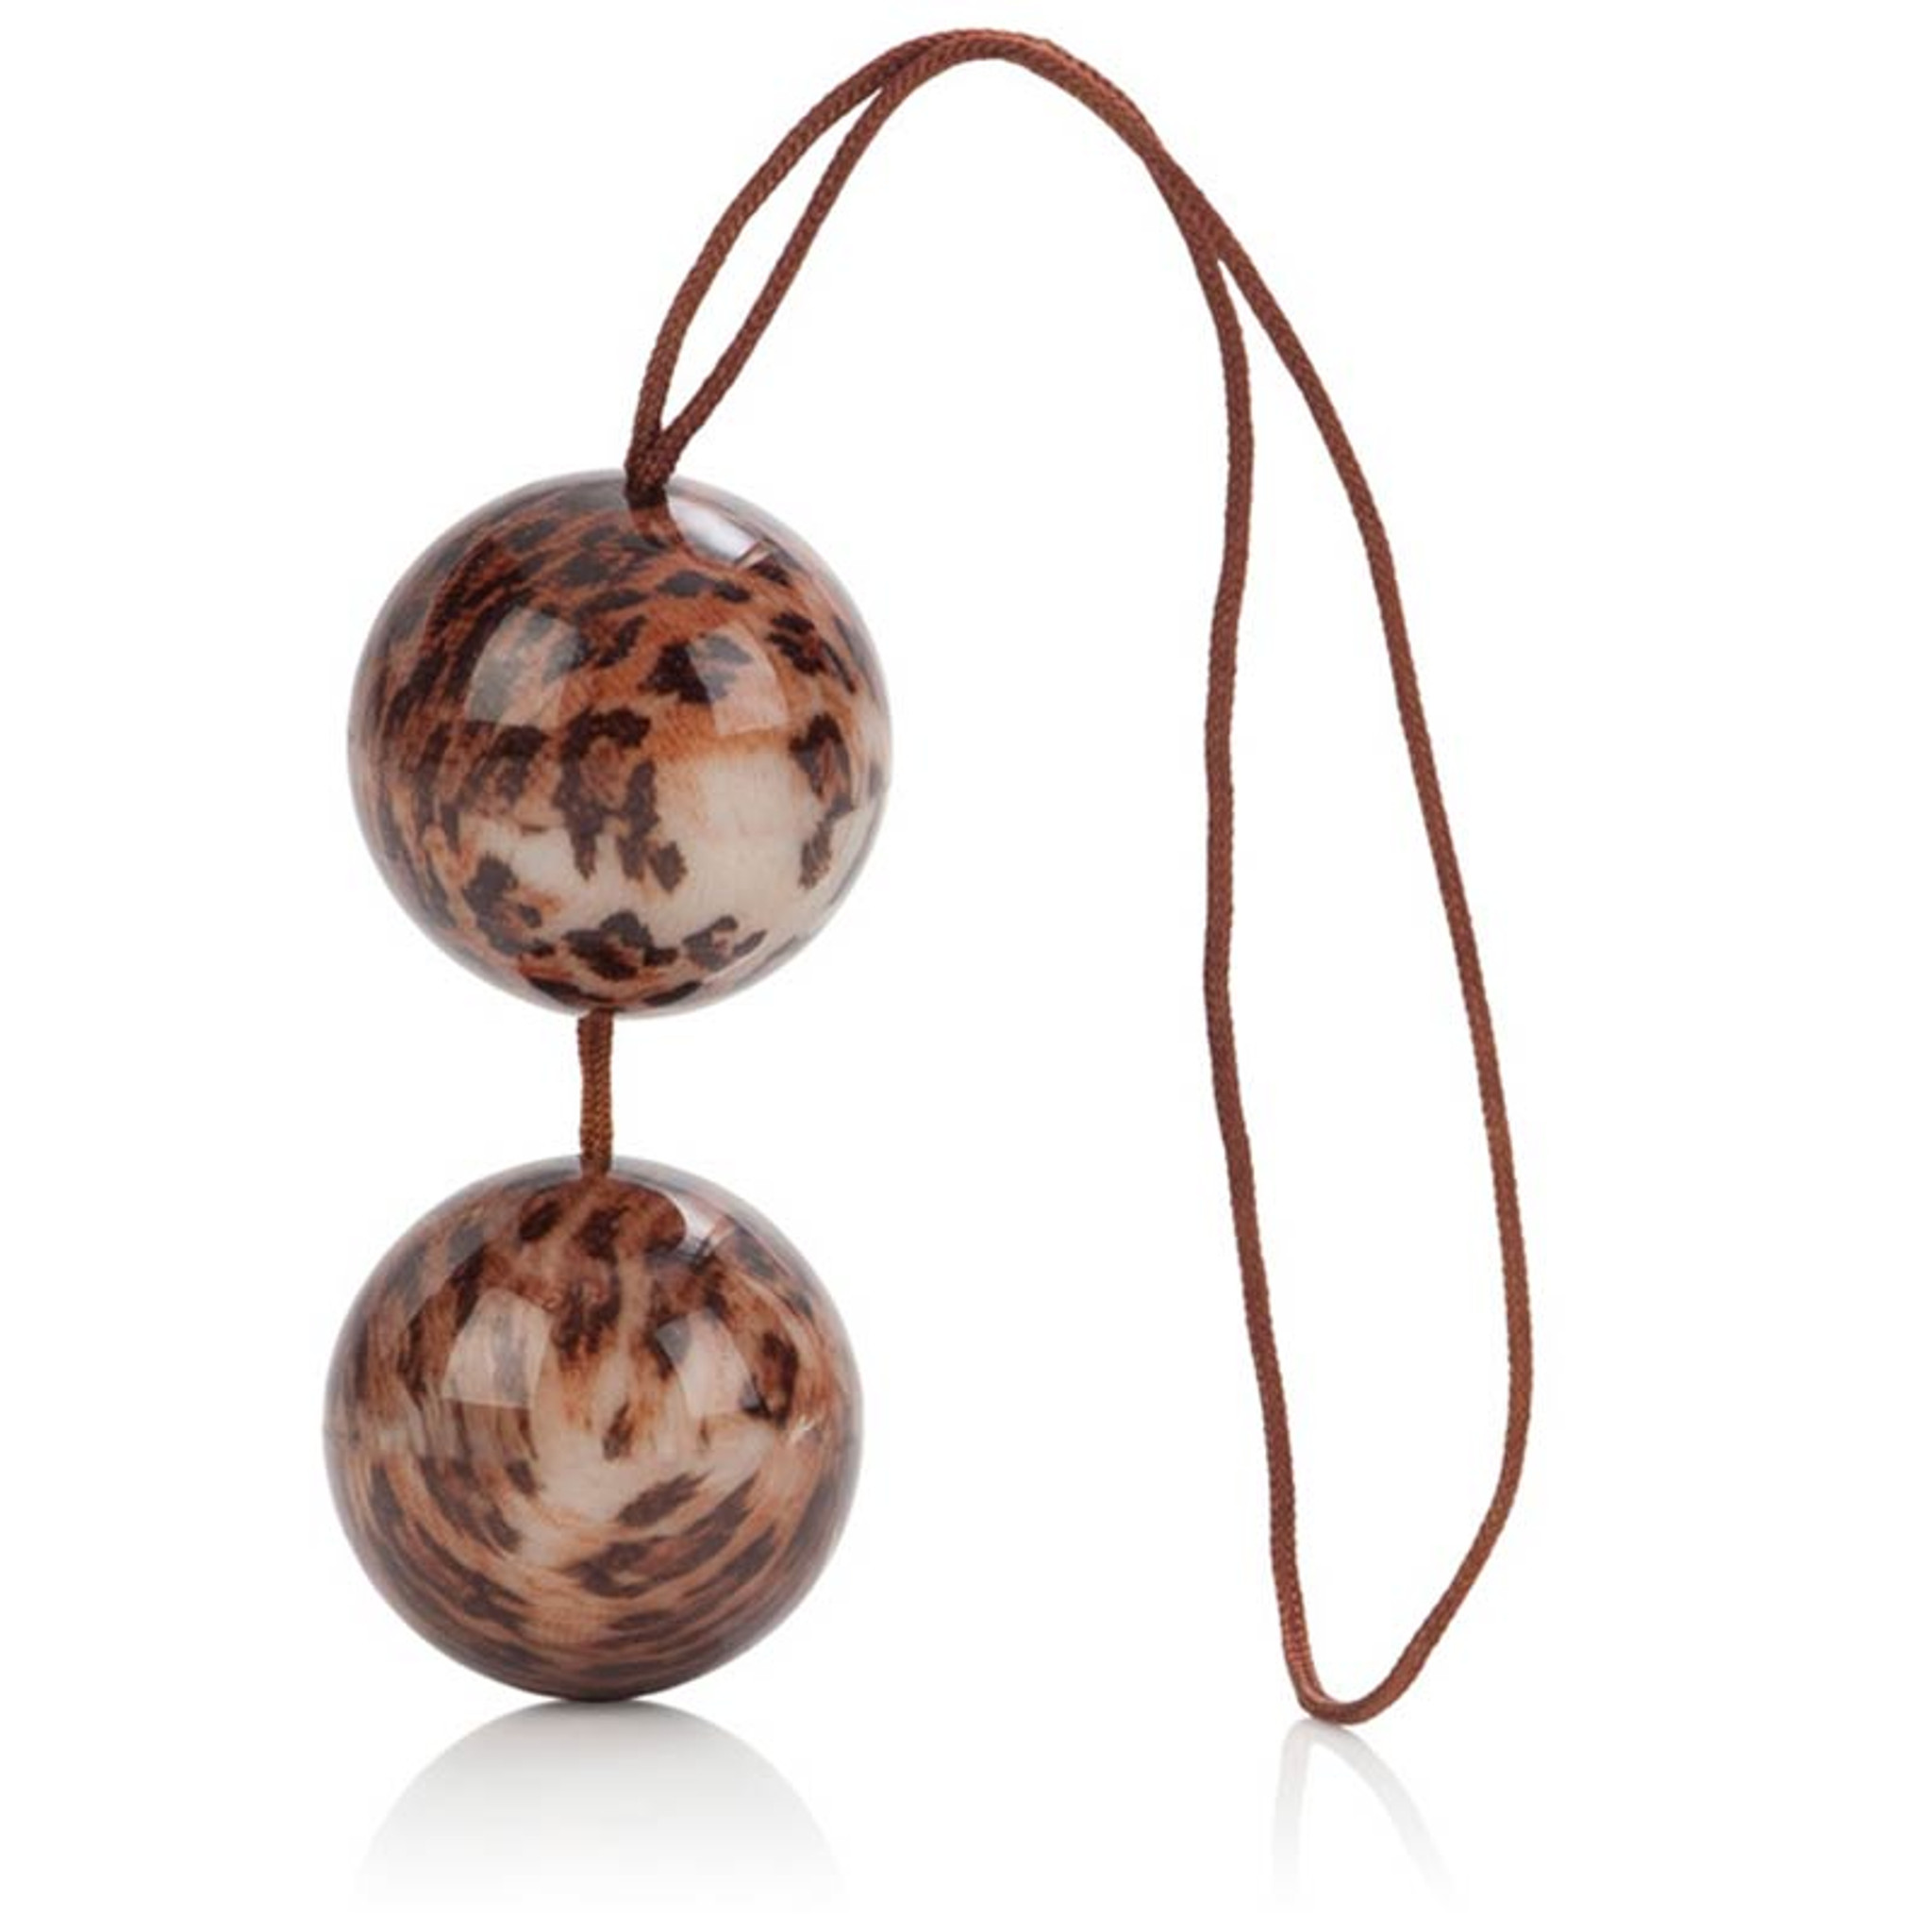 The Leopard Duotone Balls - Cirilla's